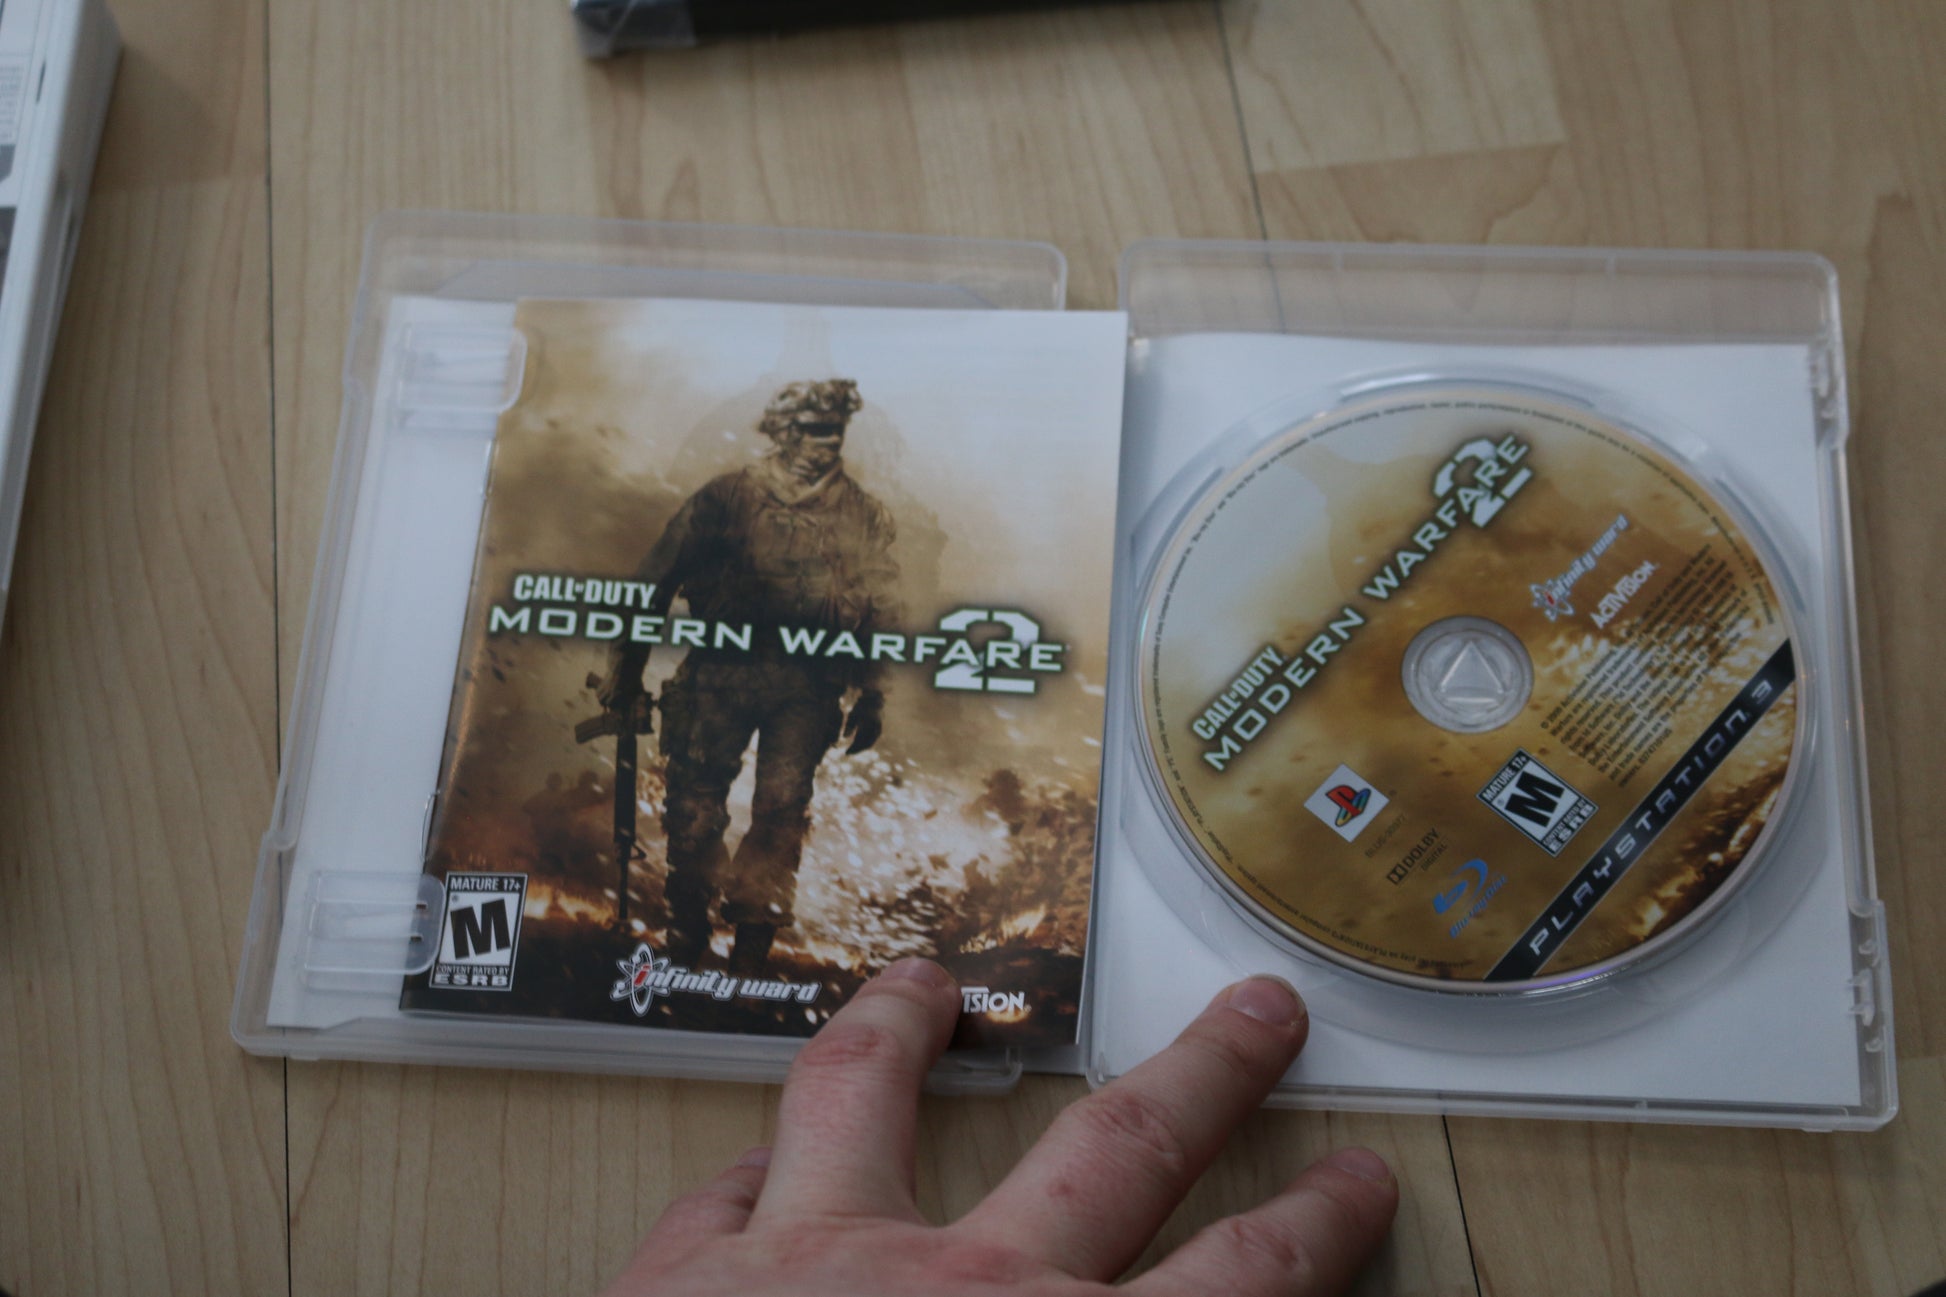 Call of Duty Modern Warfare 2 (PlayStation 3, 2008) COD MW2 PS2